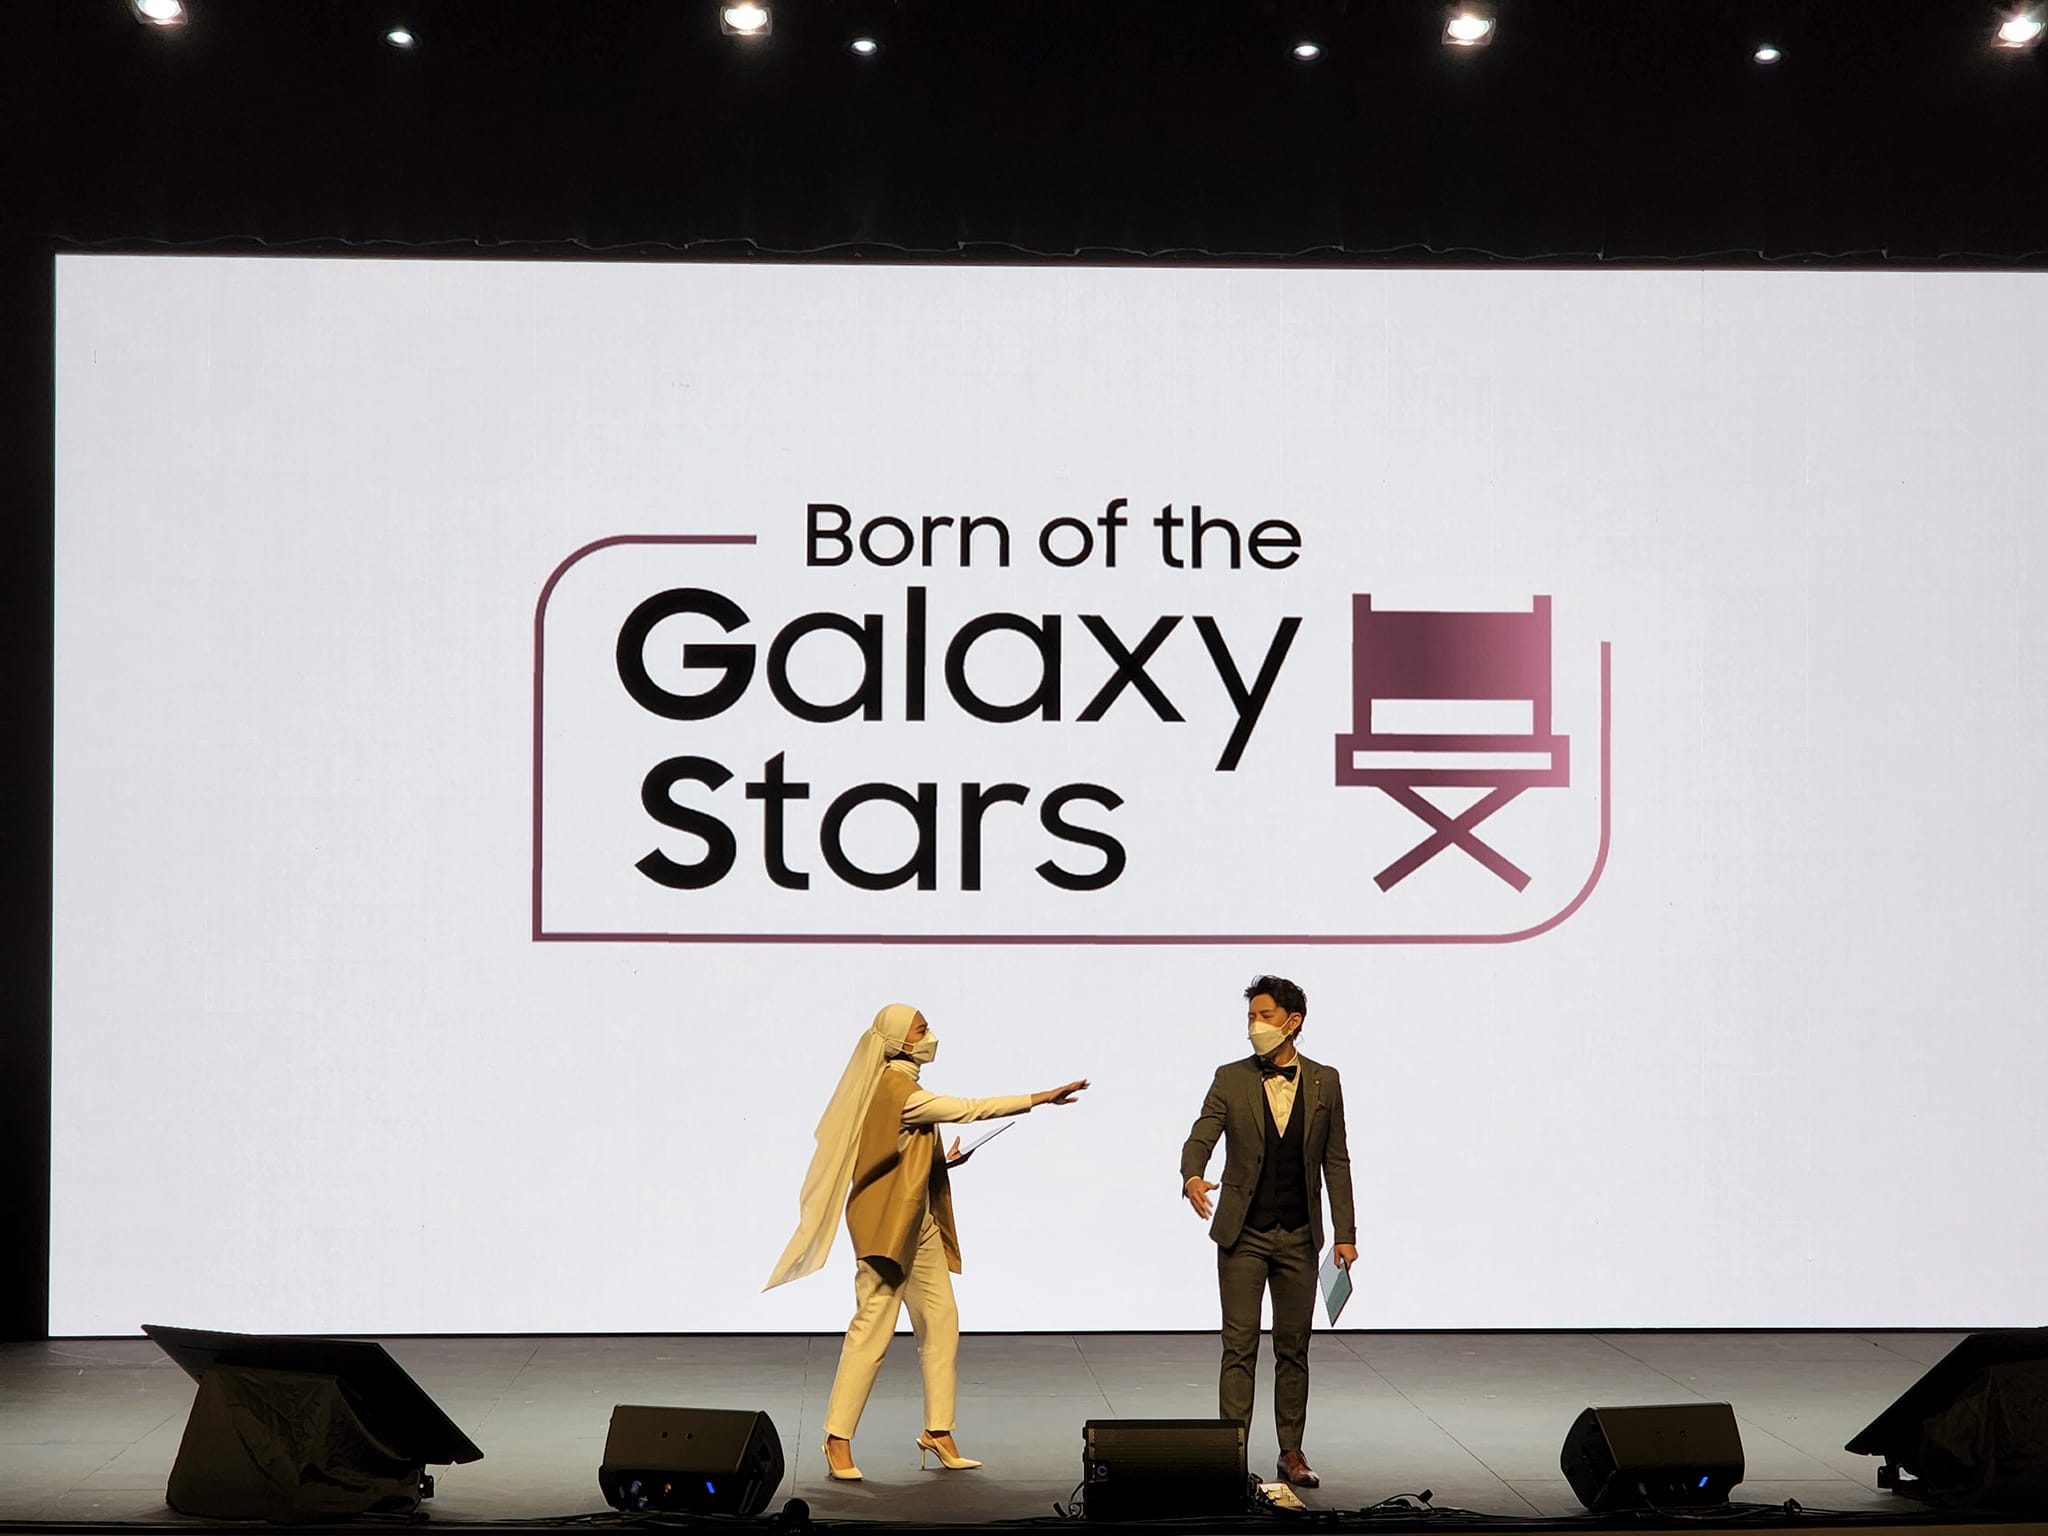 Samsung 聯手馬來西亞國際電影節推出 Born of the Galaxy Stars 短片攝影競賽；得獎作品將在 MIFFest 上首映！ 1